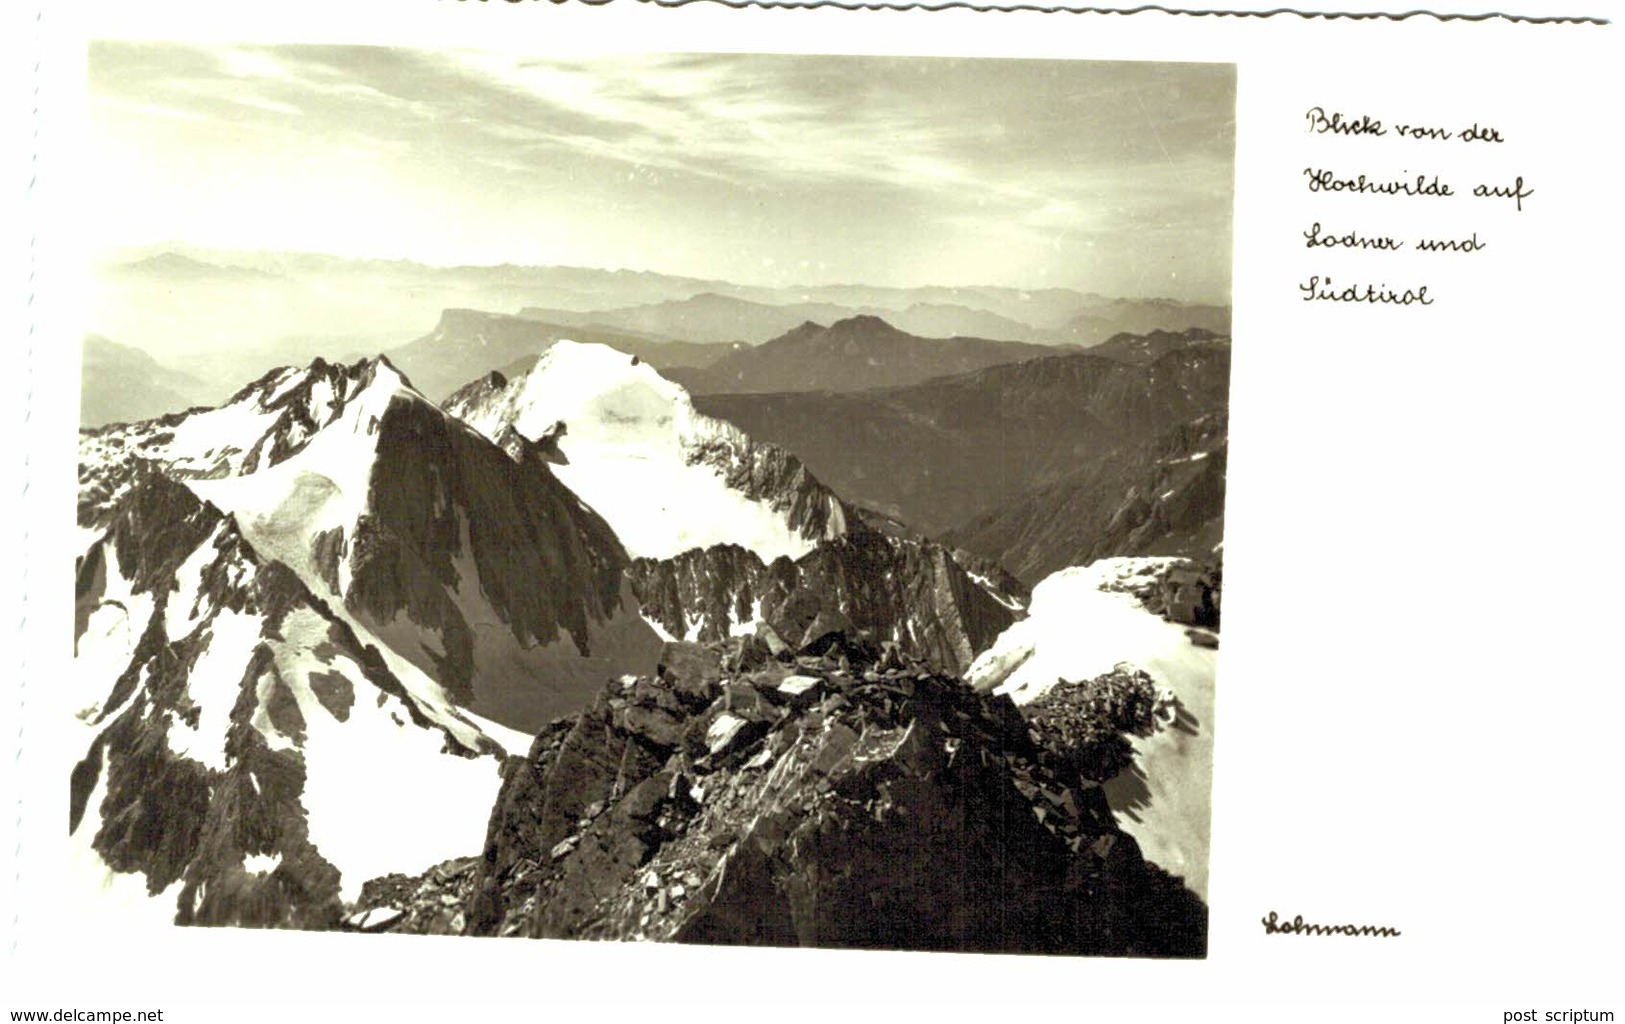 Autriche - 44 Karten mit Gebirge